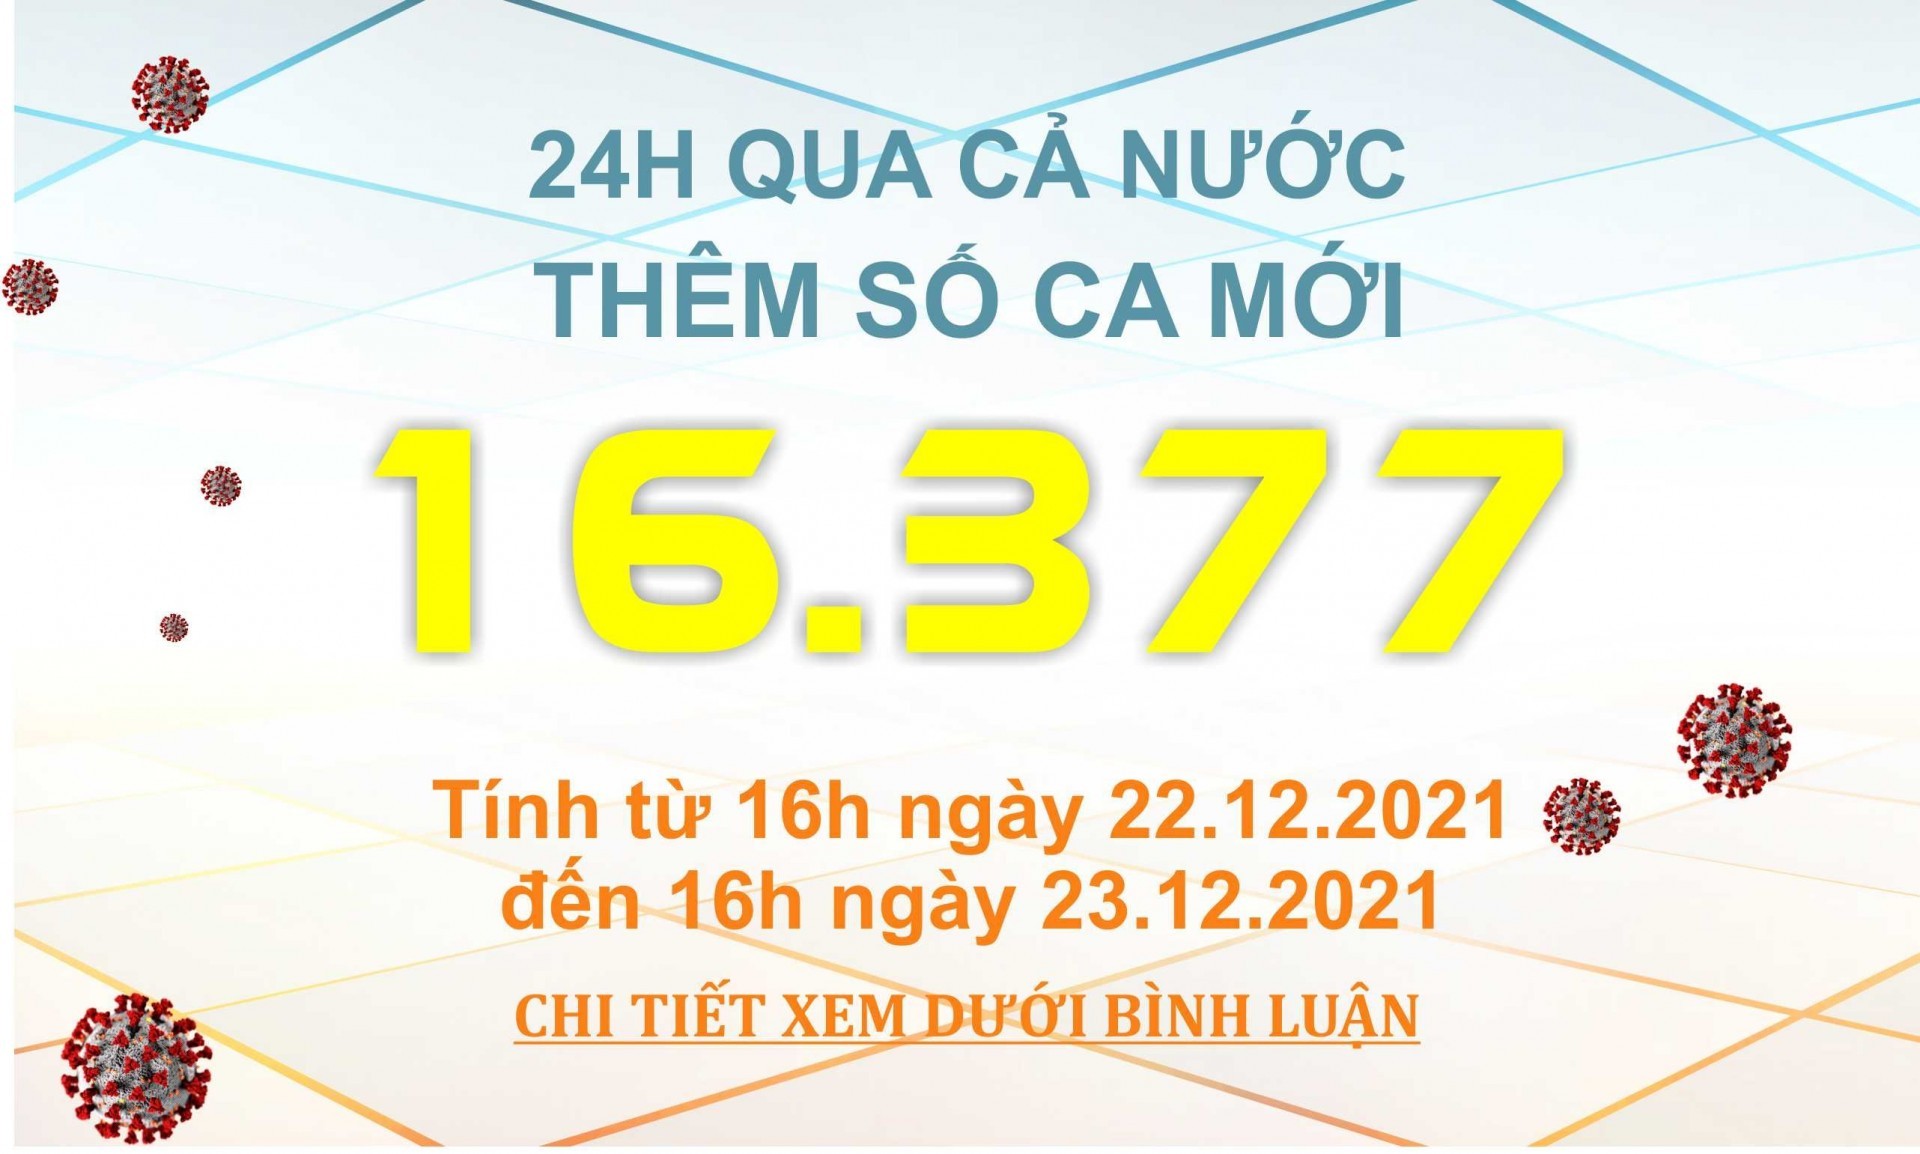 Ngày 23/12: Có 16.377 ca COVID-19, Hà Nội vẫn tiếp tục nhiều nhất cả nước với 1.774 ca